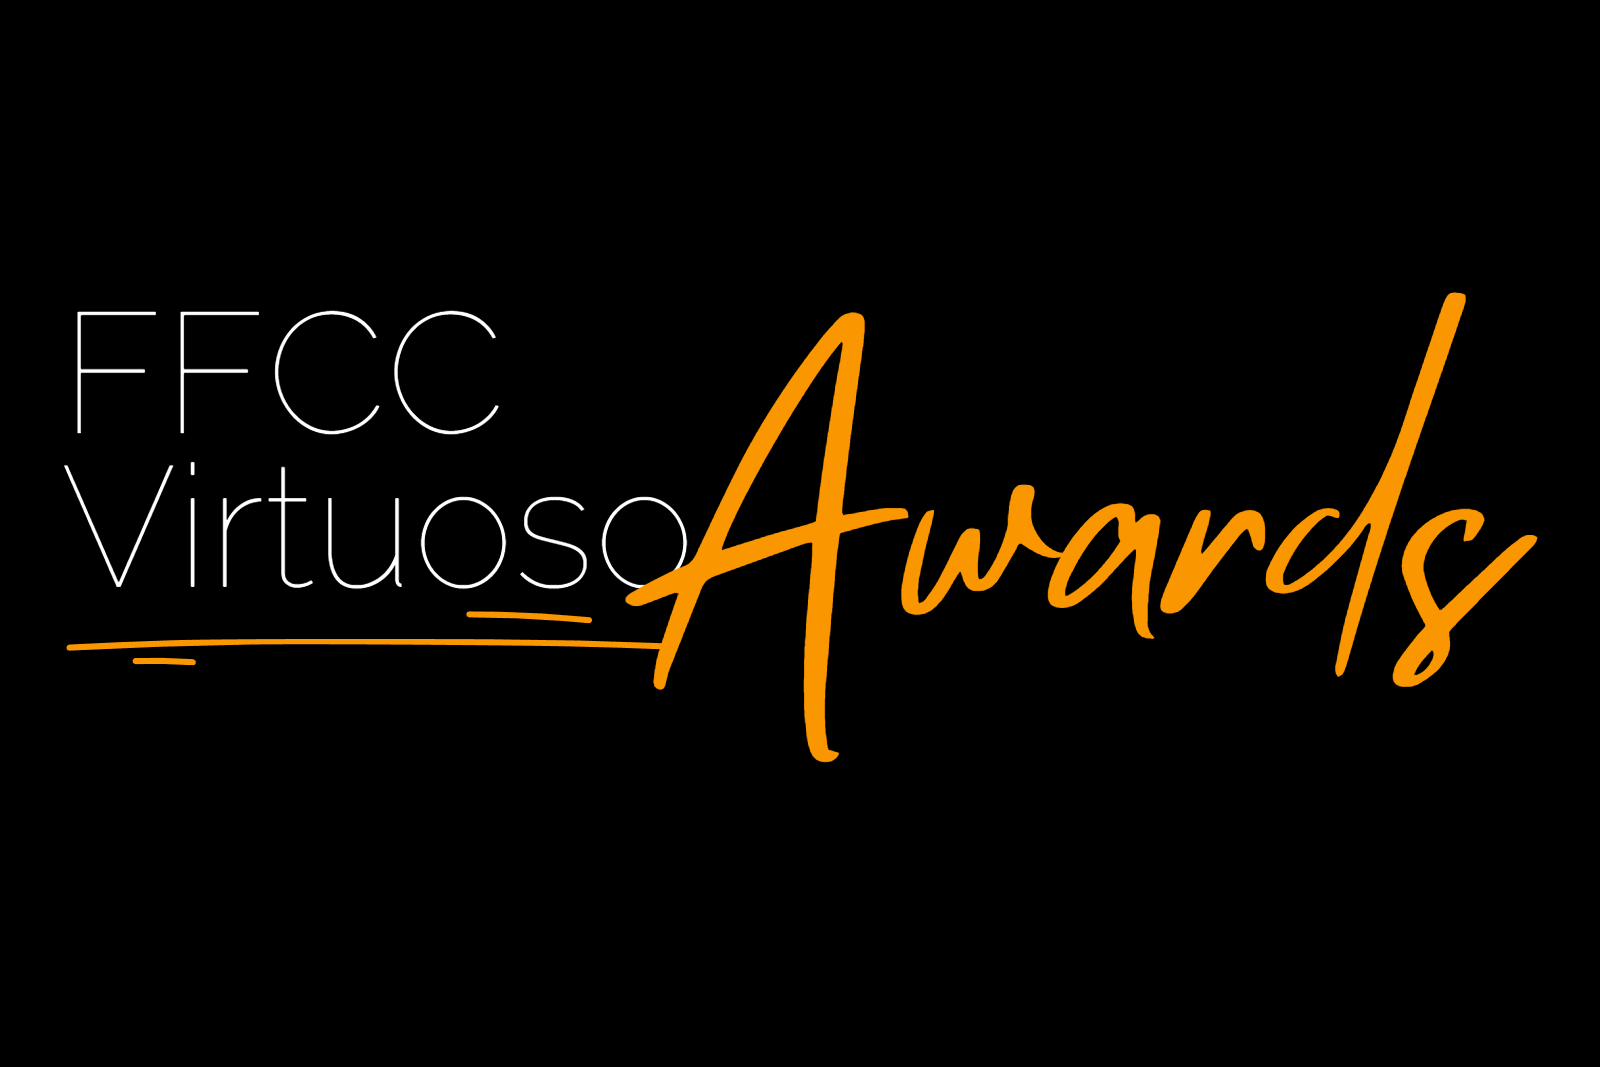 Award logo full